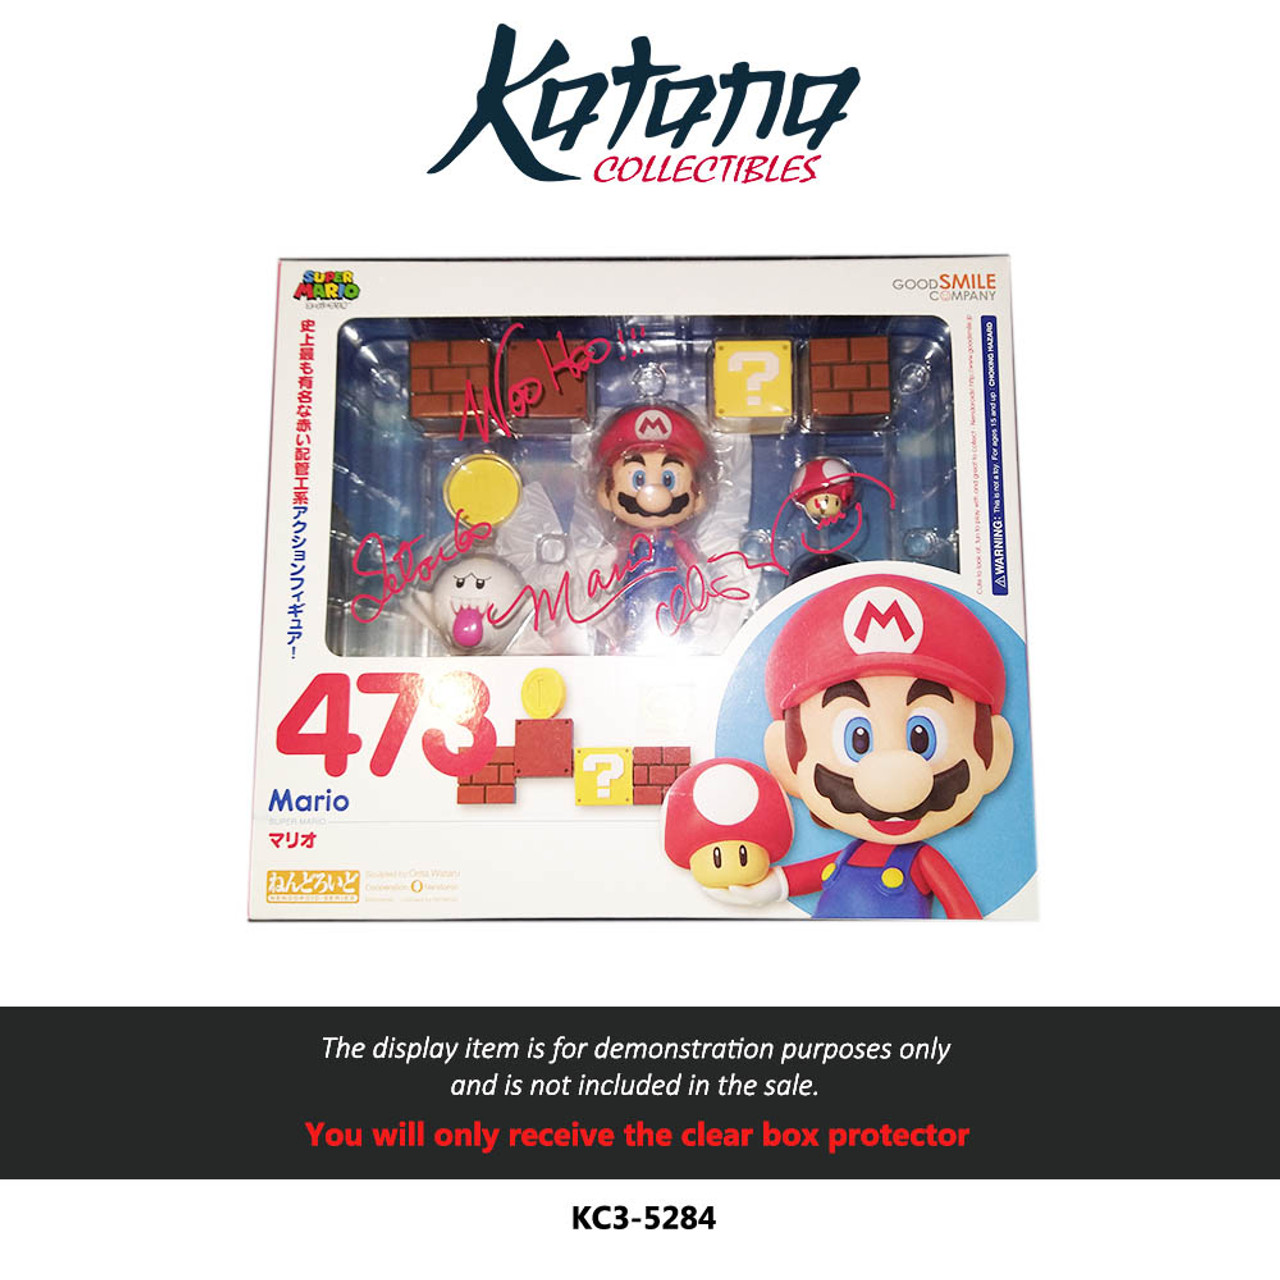 Katana Collectibles Protector For Goodsmile Mario Nendoroid Big Box